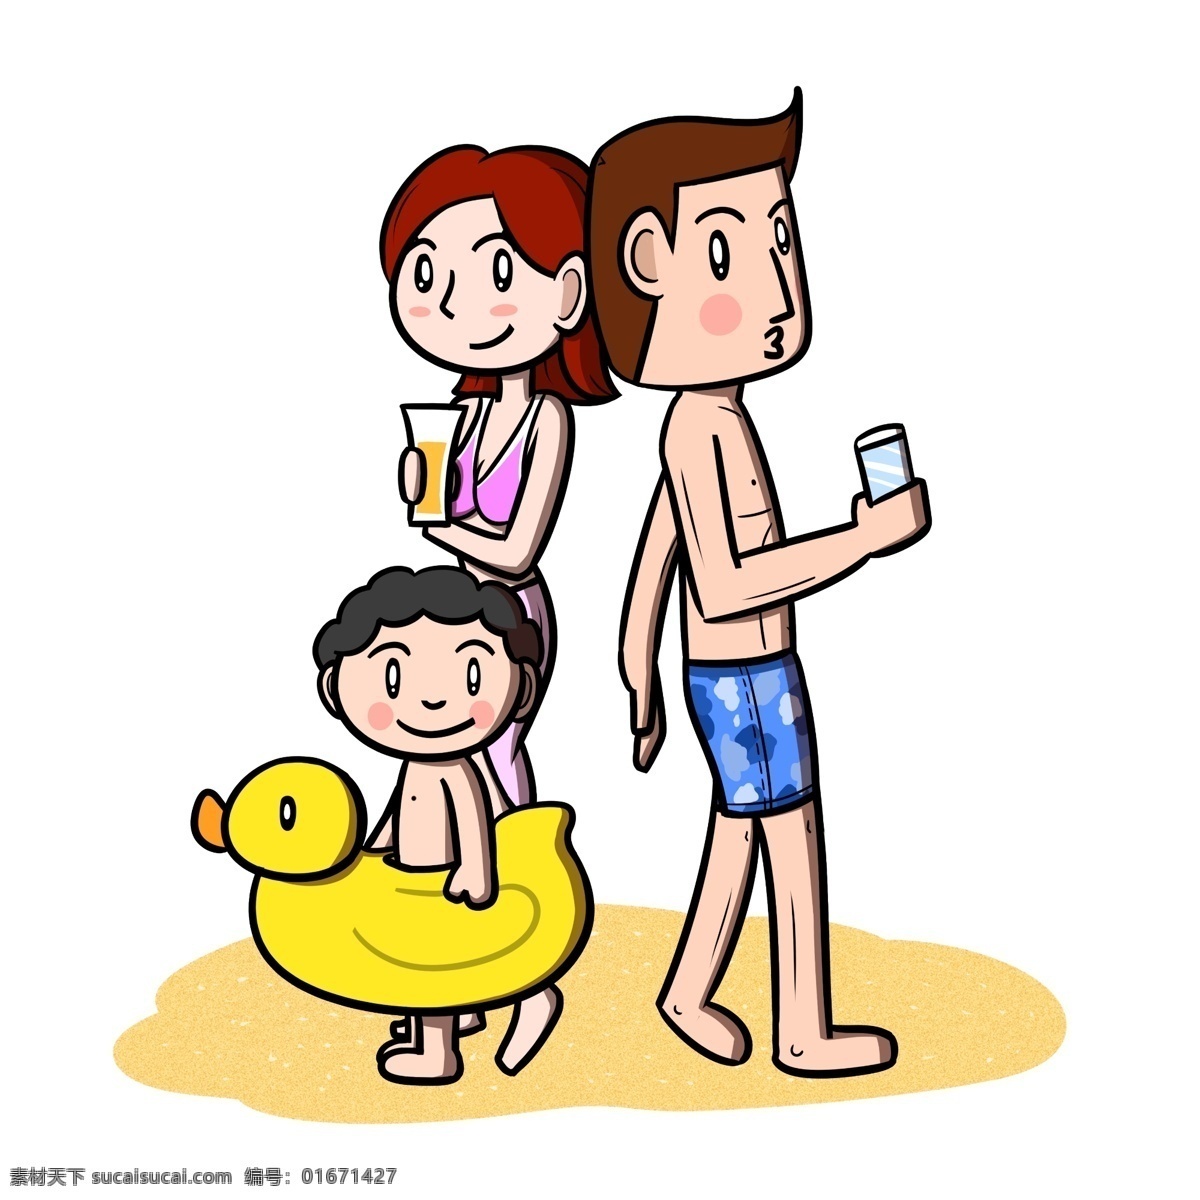 卡通 全家人 海边 沙滩 玩乐 透明 底 夏季 夏天 卡通家人 儿童 玩耍 海滩 海边人物 夏季人物 夏天人物 卡通人物 卡通夏季